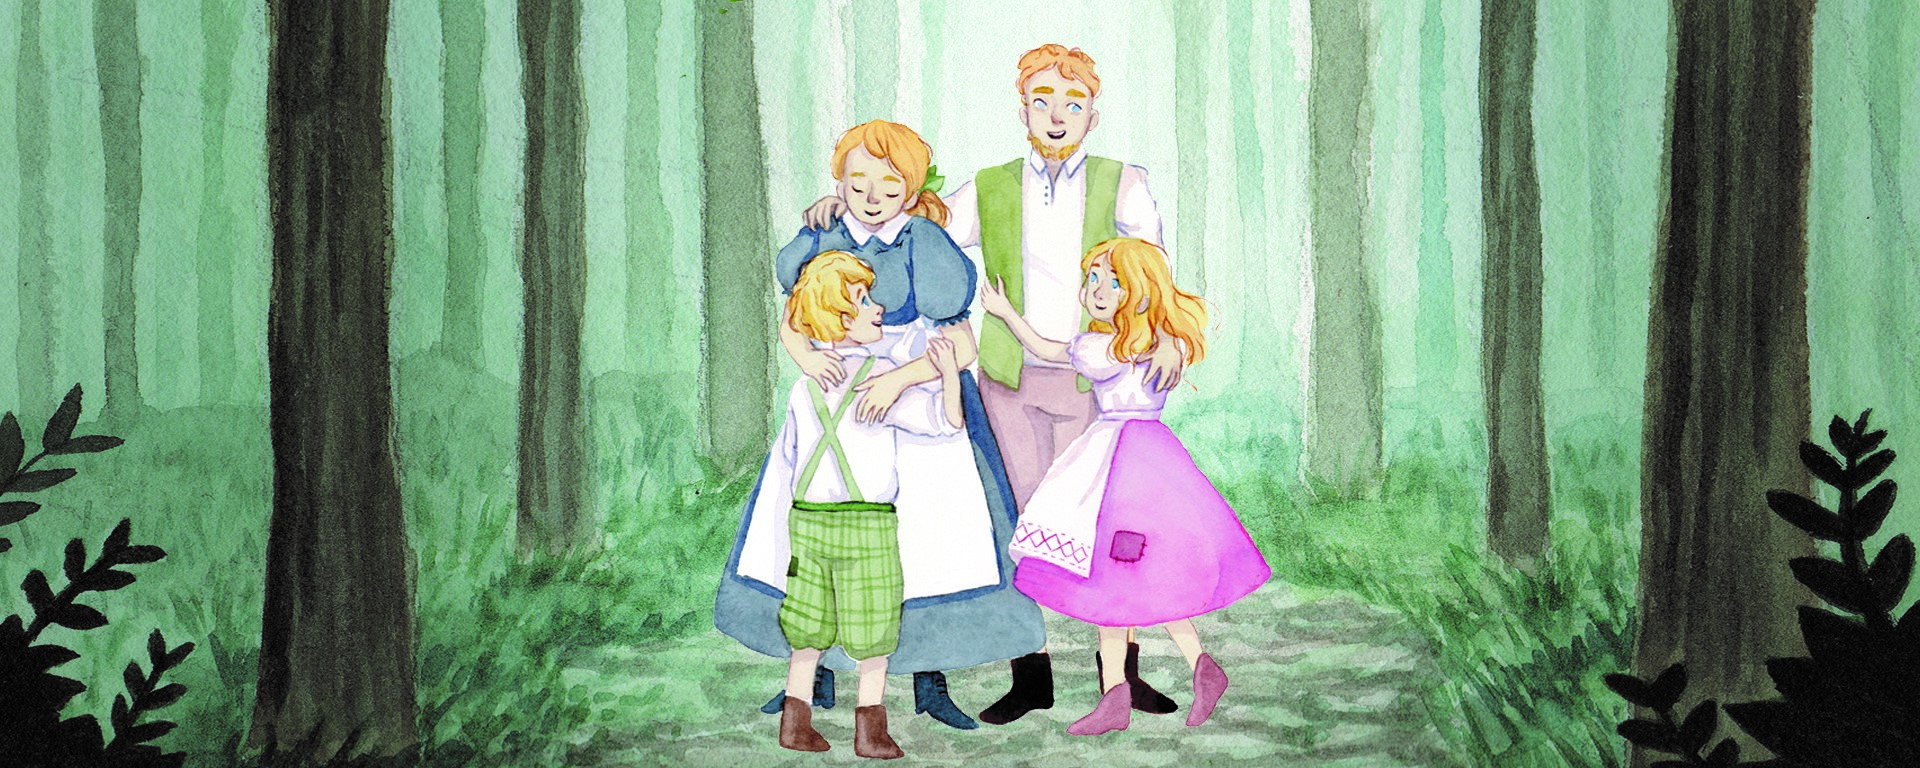 Eine Illustration von Gretel, Hänsel und ihren Eltern. Die Familie steht in einem nebeligen Wald. Die Kinder umarmen ihre Eltern freudestrahlend.